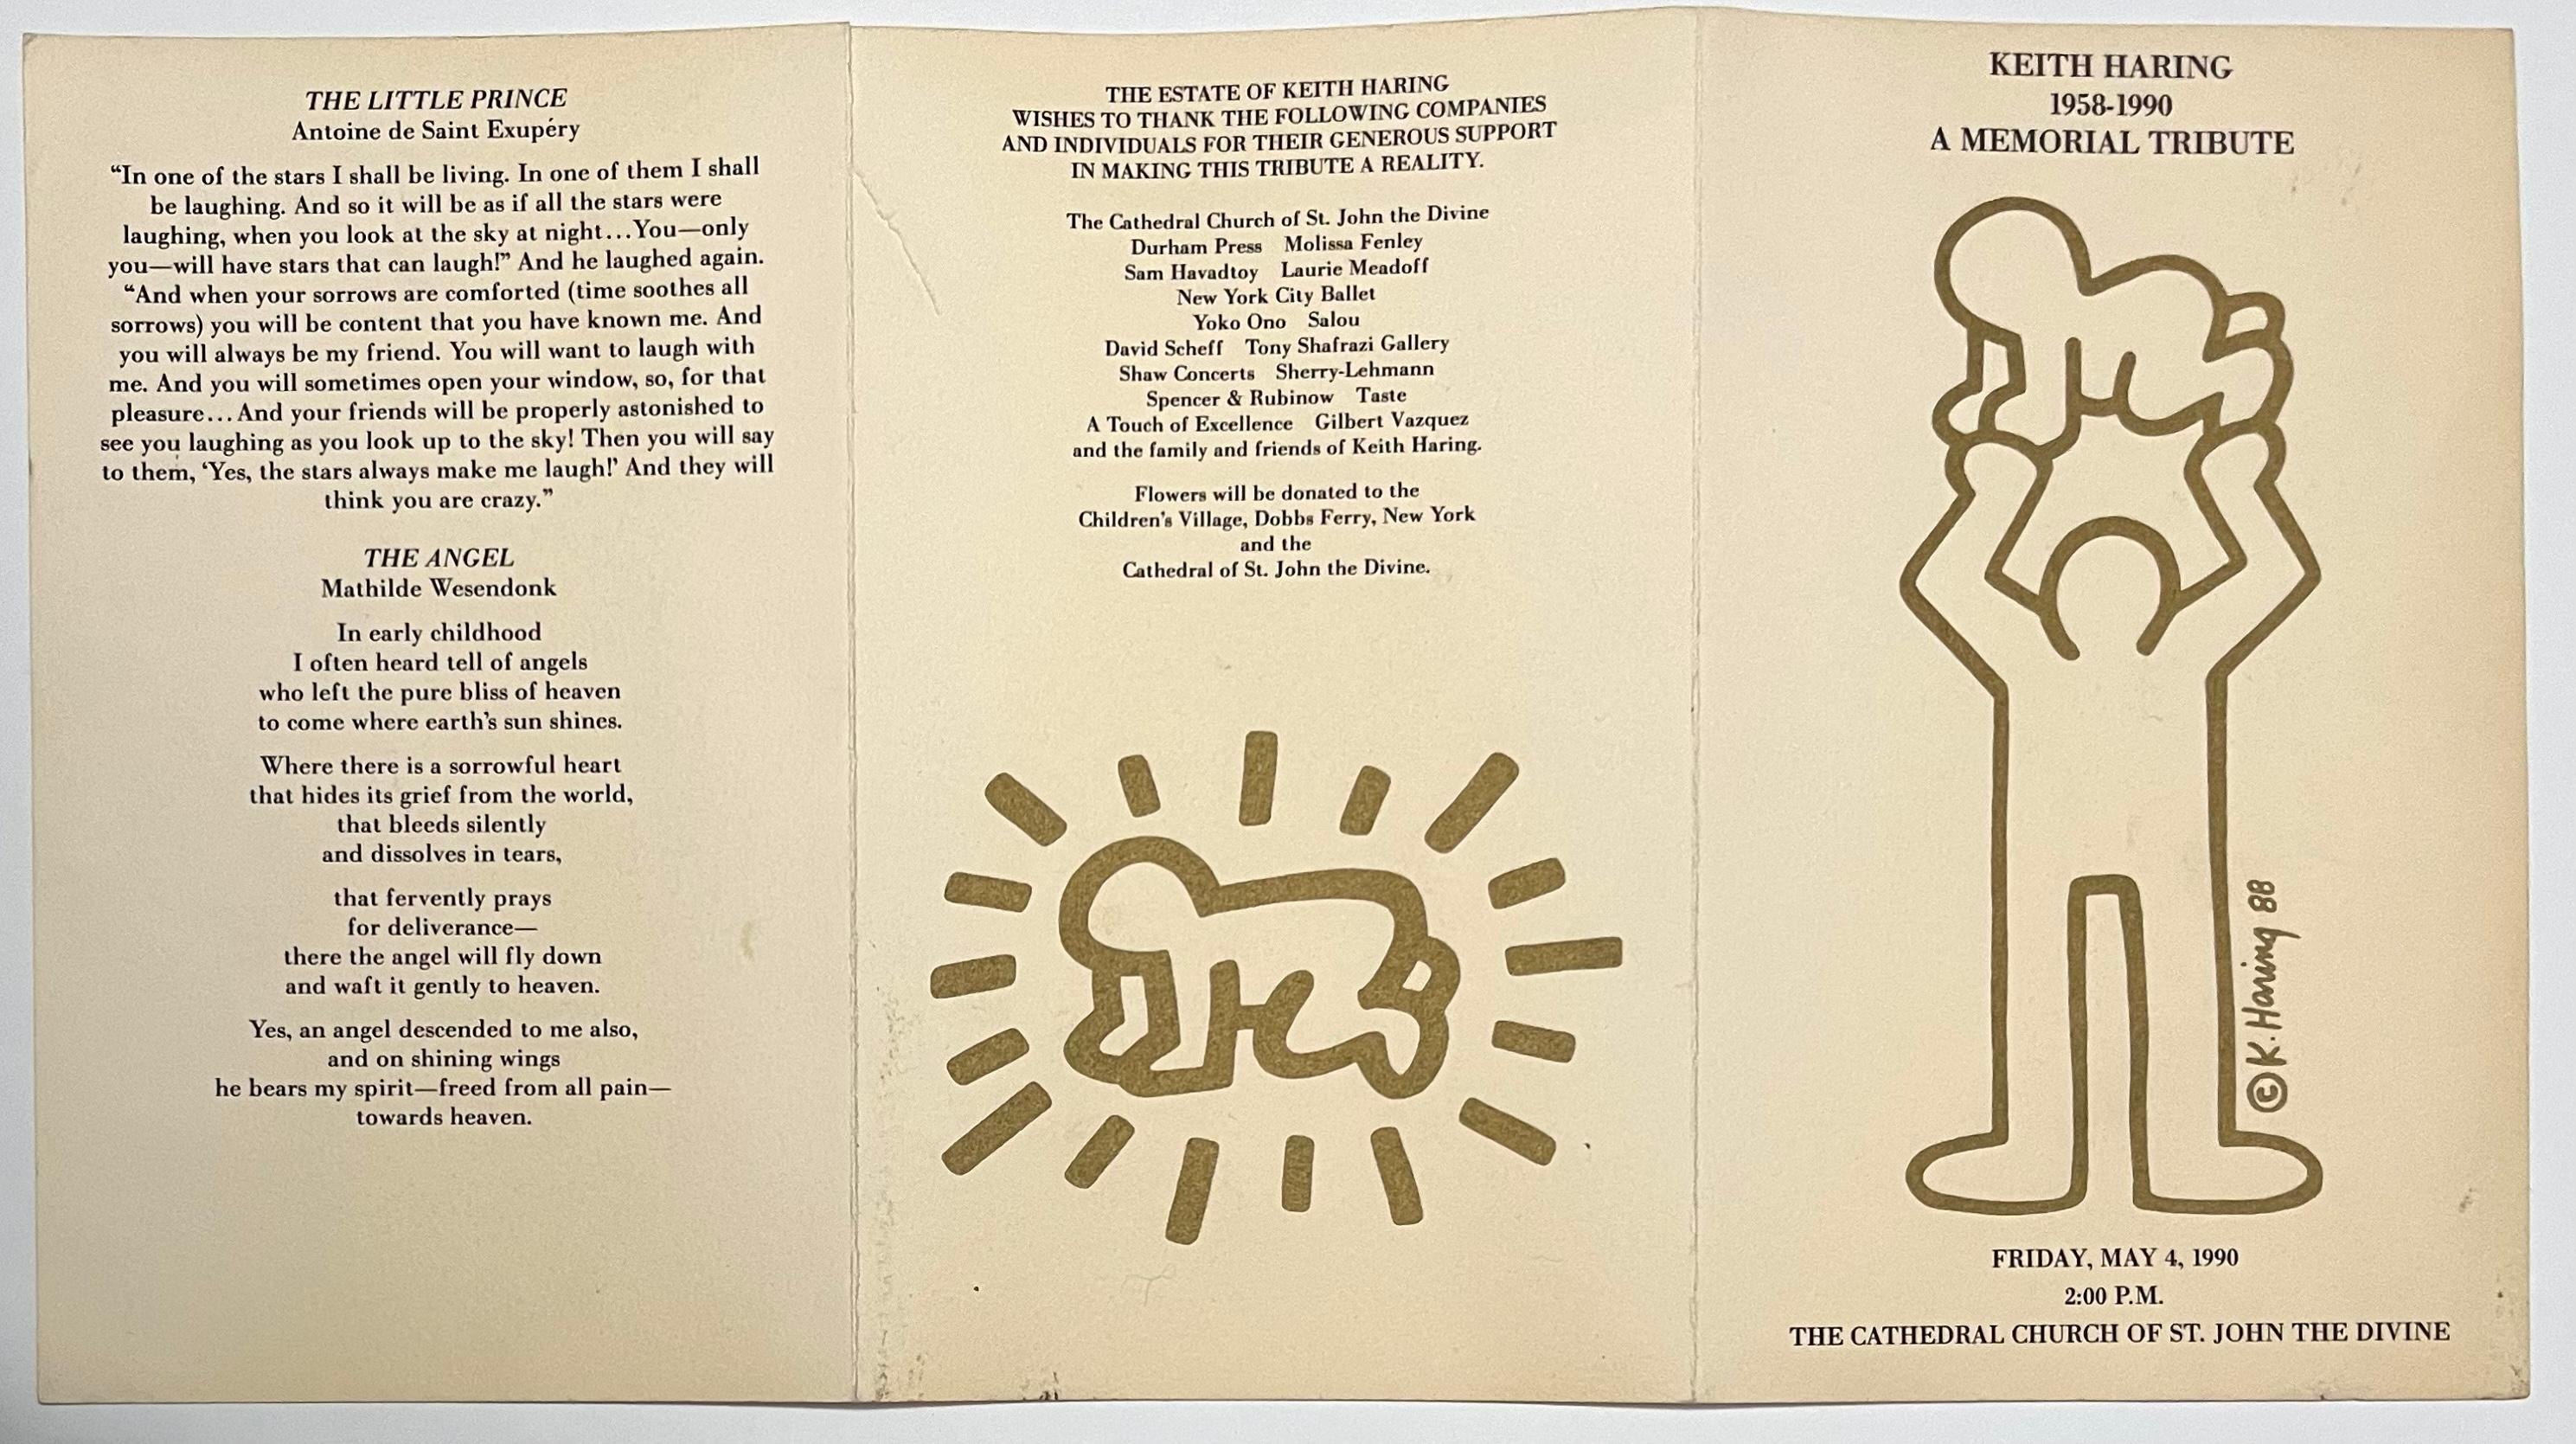 Keith Haring - Ein Gedenken 1990:
Seltenes, historisches, aufklappbares Einladungsprogramm mit doppelseitigem, goldfoliertem Kunstwerk - veröffentlicht anlässlich des Gedenkgottesdienstes für Keith Haring, der am 4. Mai 1990 (an Harings Geburtstag)